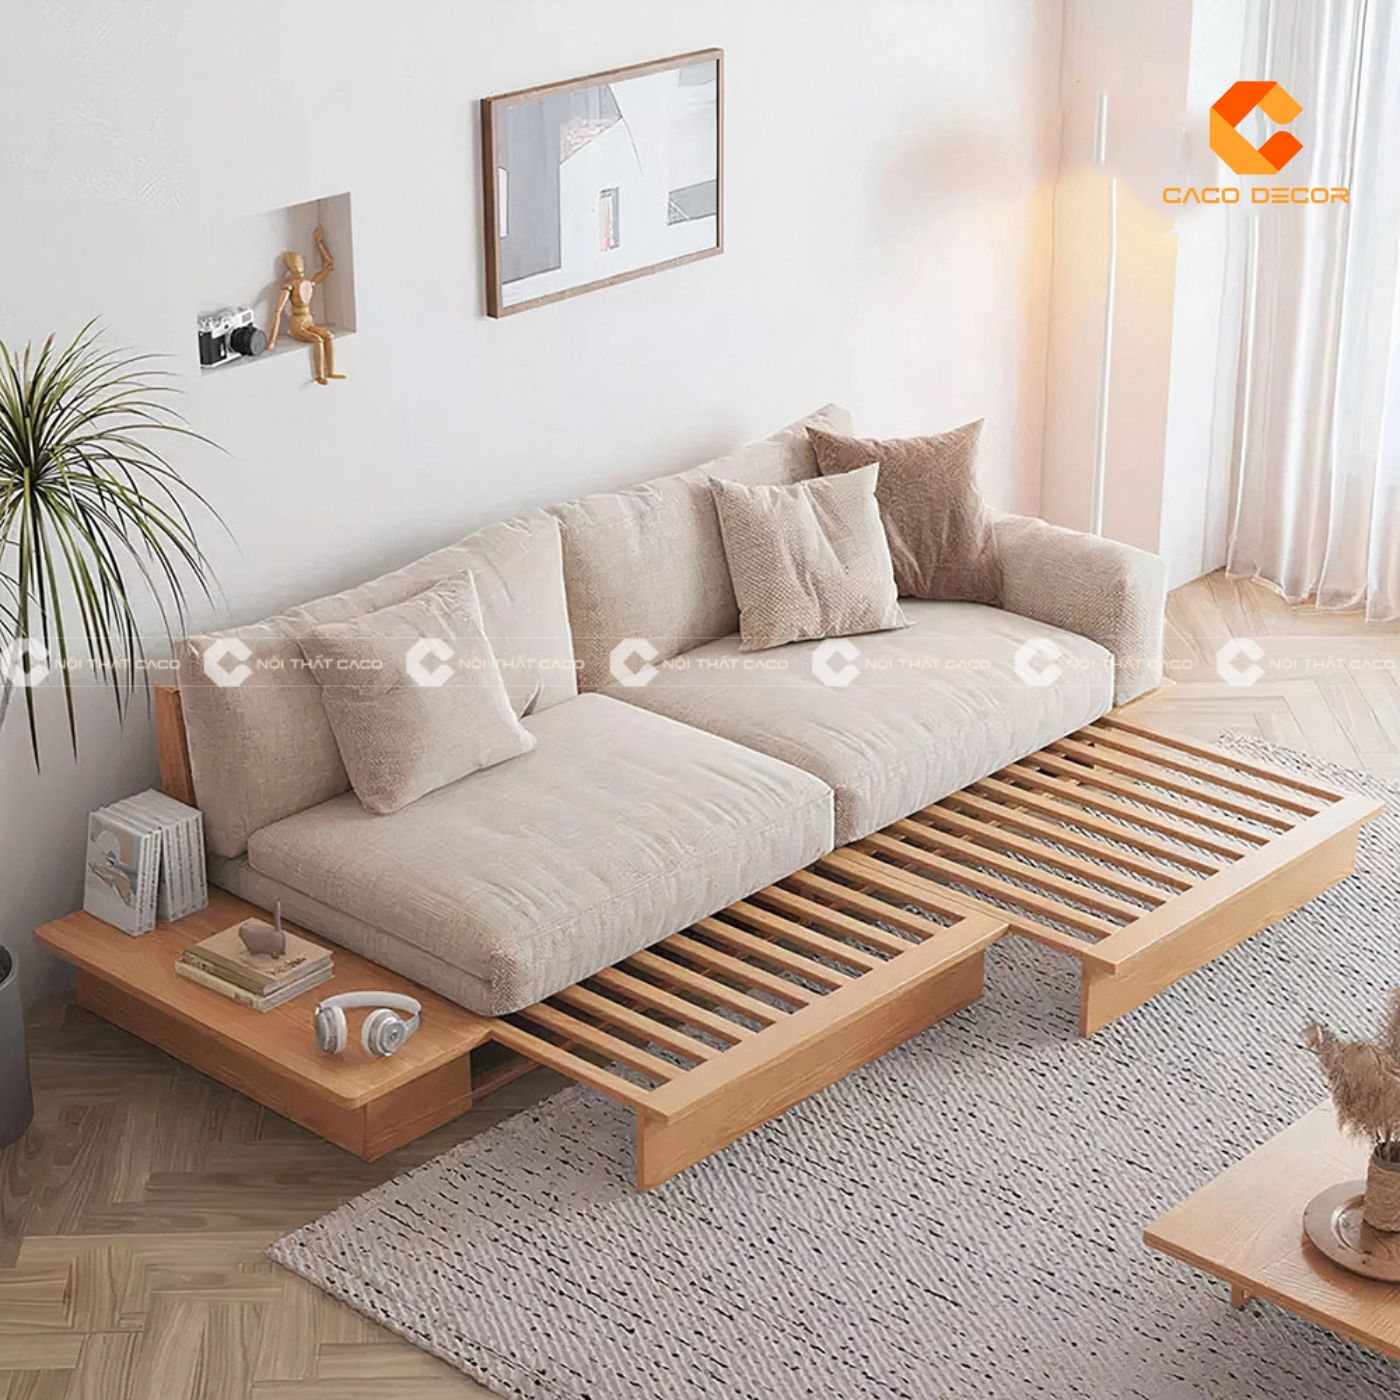 Sofa gỗ hiện đại lựa chọn hoàn hảo cho phòng khách chung cư 12